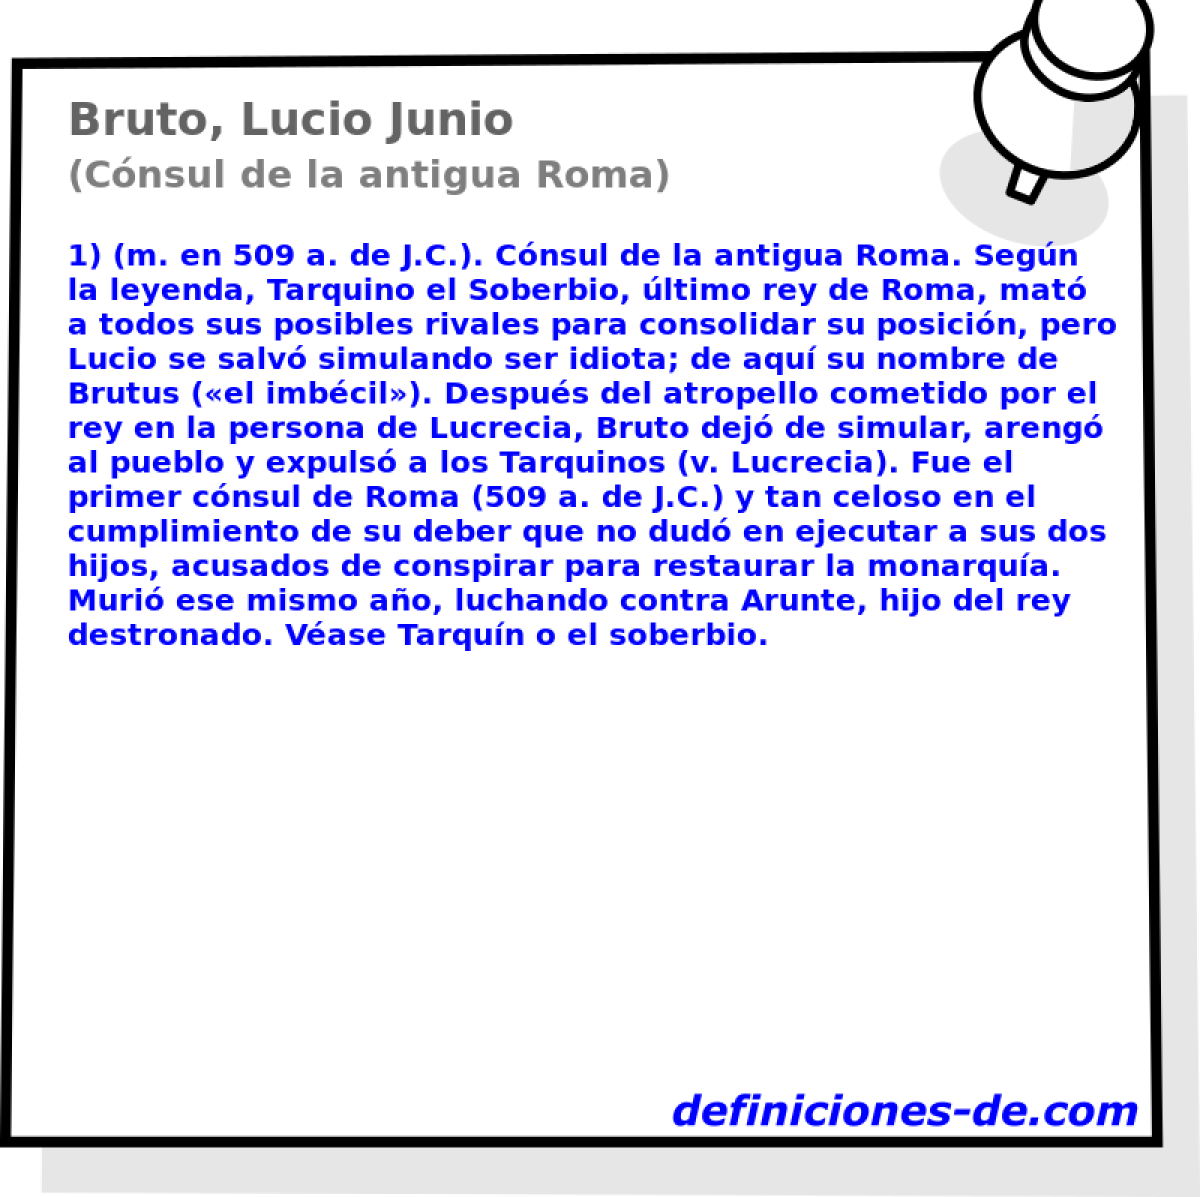 Bruto, Lucio Junio (Cnsul de la antigua Roma)